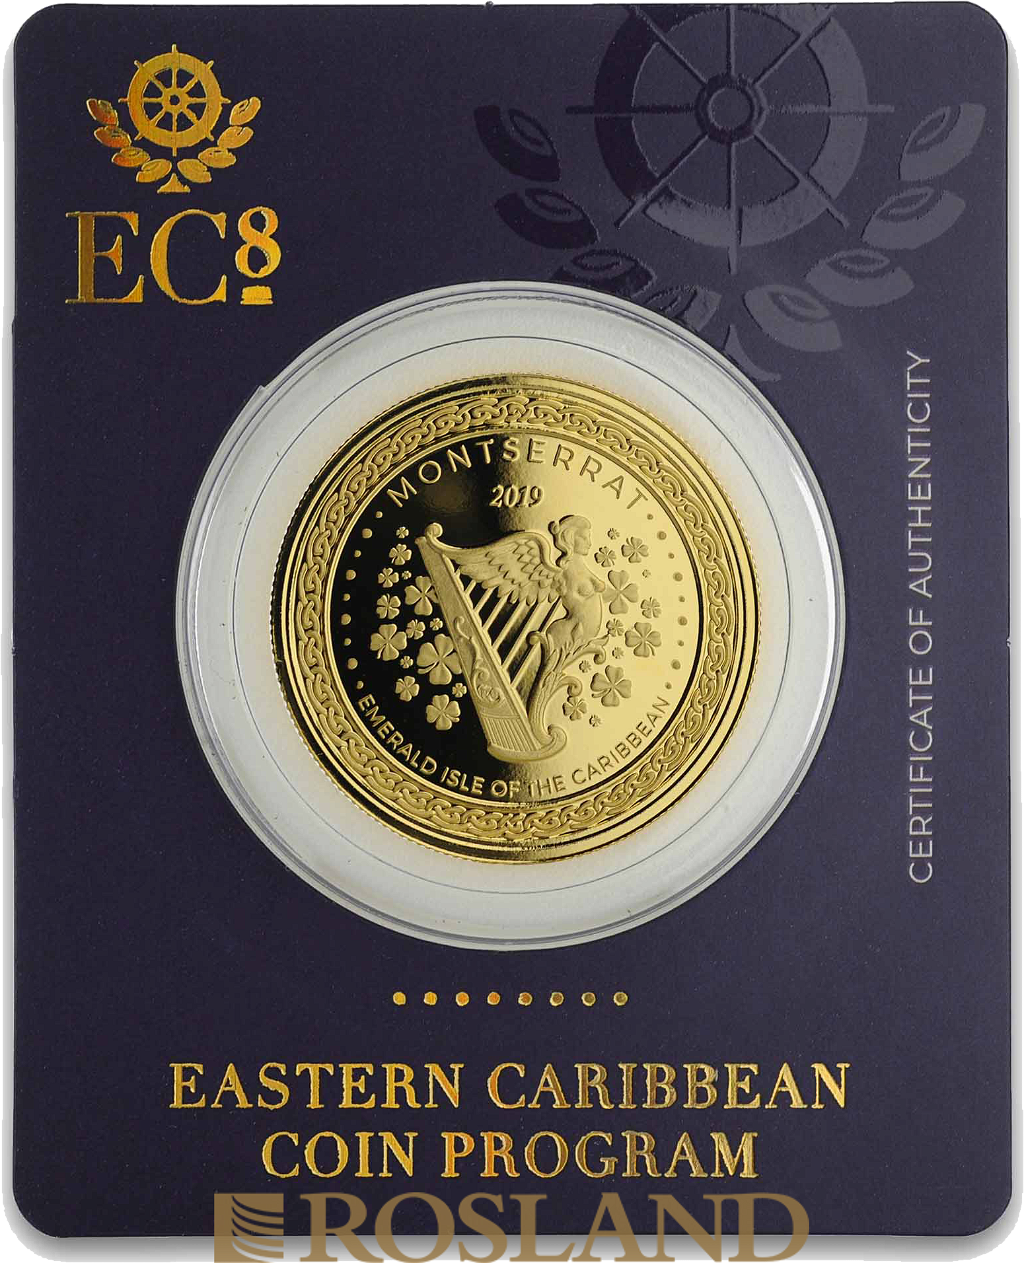 1 Unze Goldmünze EC8 Montserrat Emerald Isle of the Caribbean 2019 (Blister, Zertifikat)